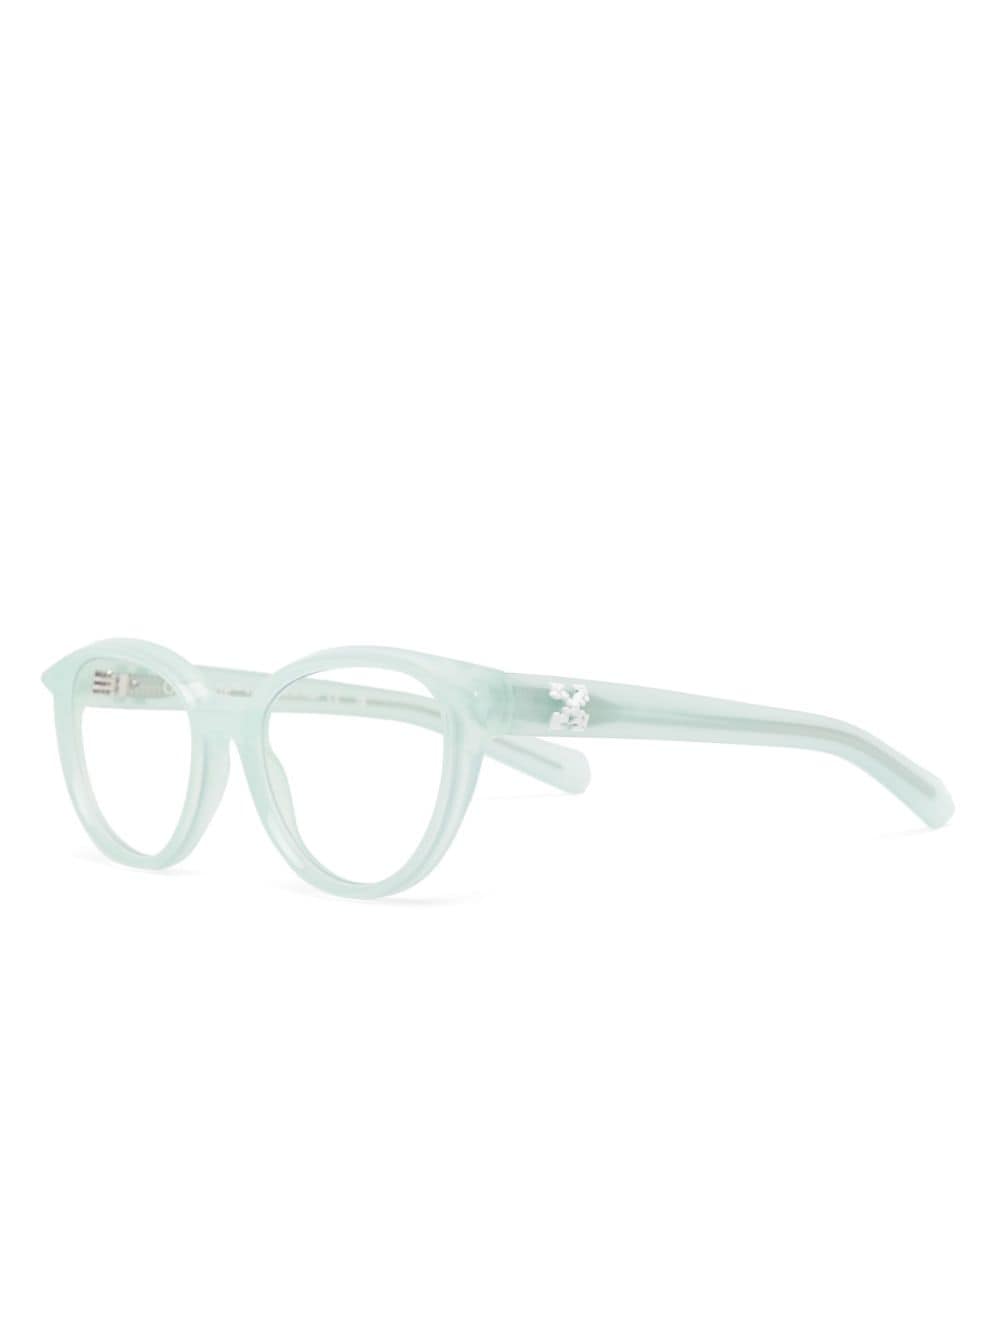 Off-White Eyewear Style 26 bril met rond montuur - Groen